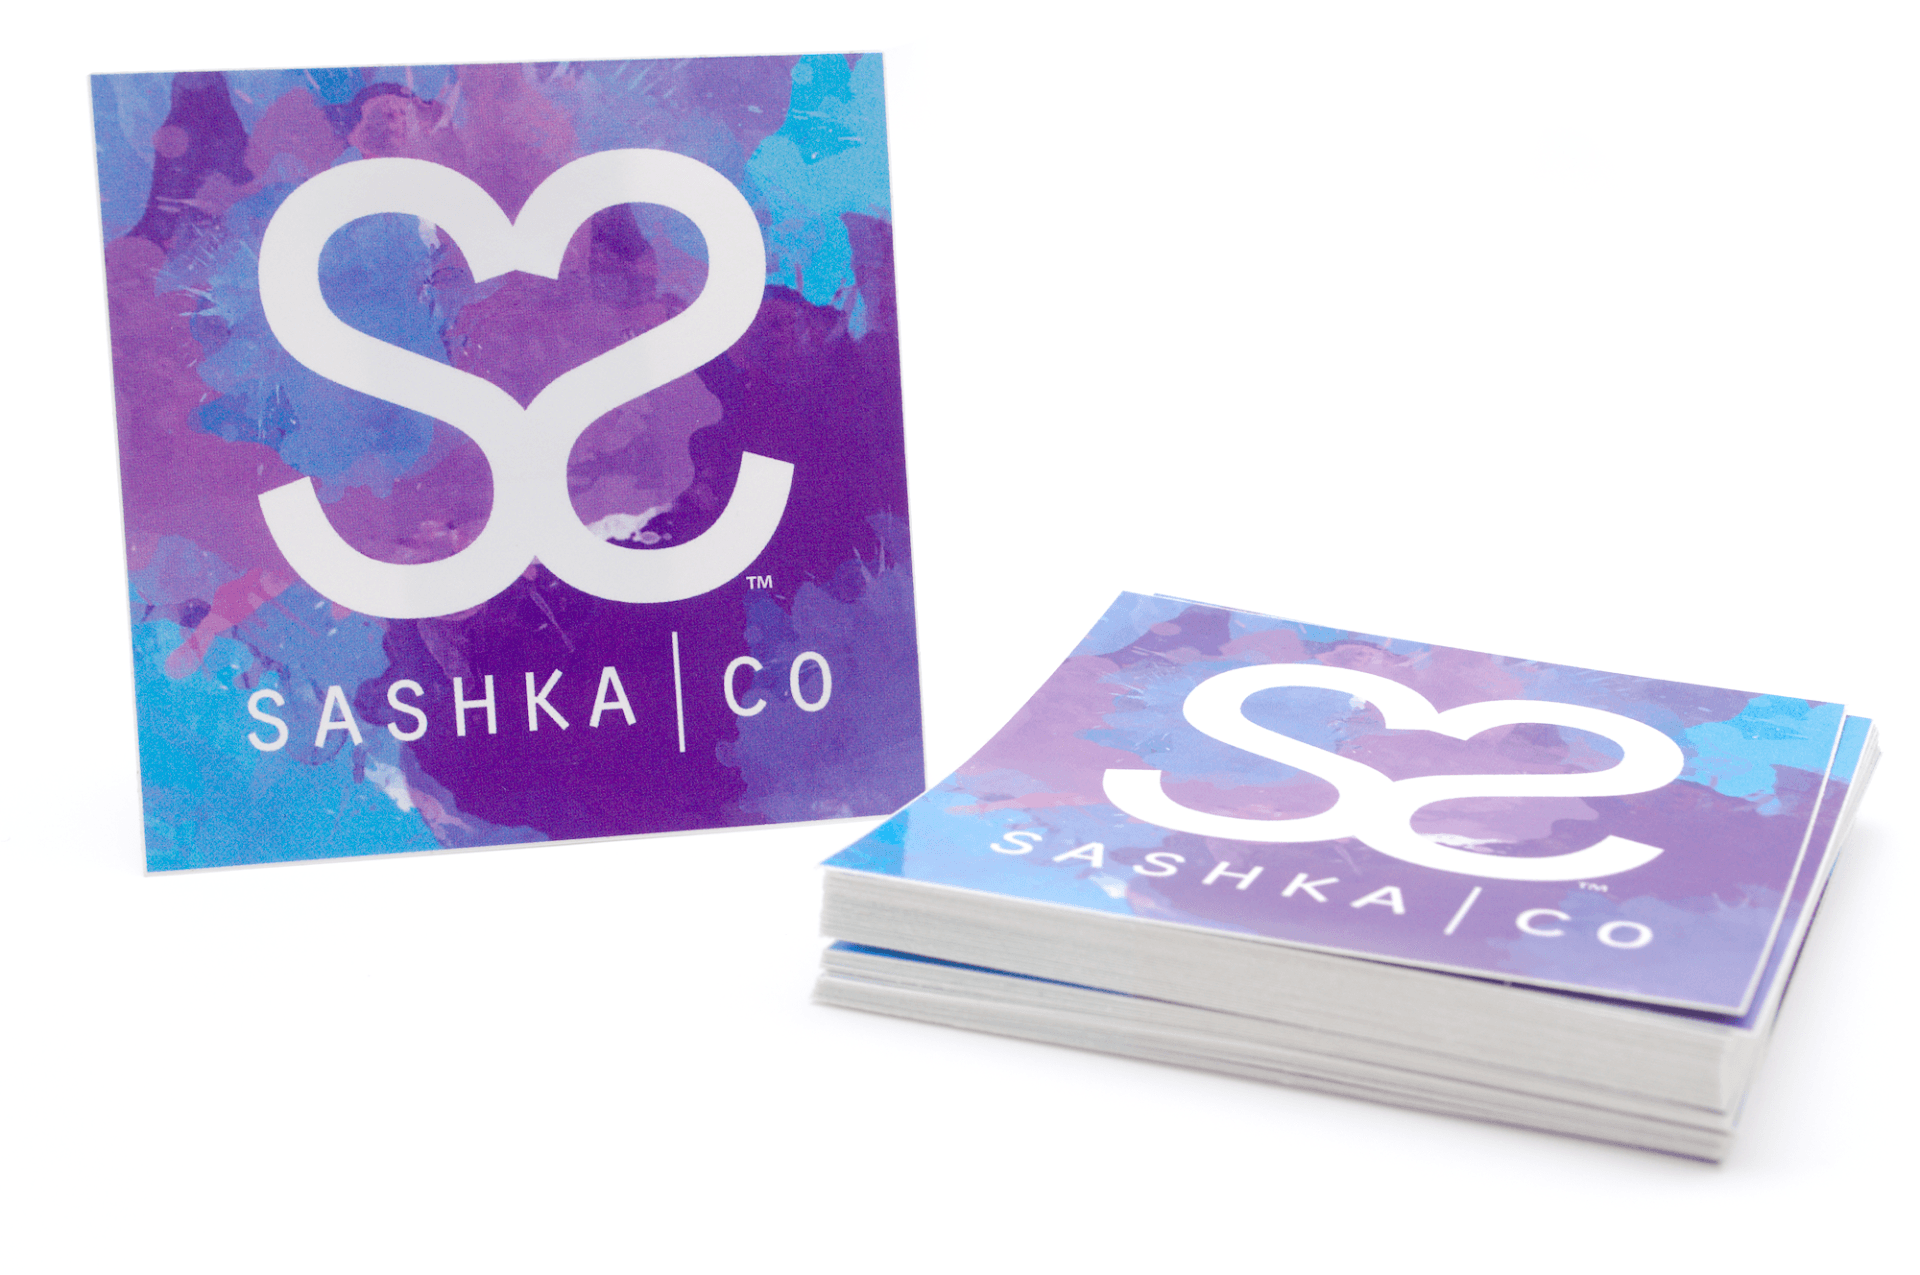 Sashka Co. Extended 8" Bracelet Rose Gold / White / Light Blue / Bronze Limited Release Bracelet - Extended 8"